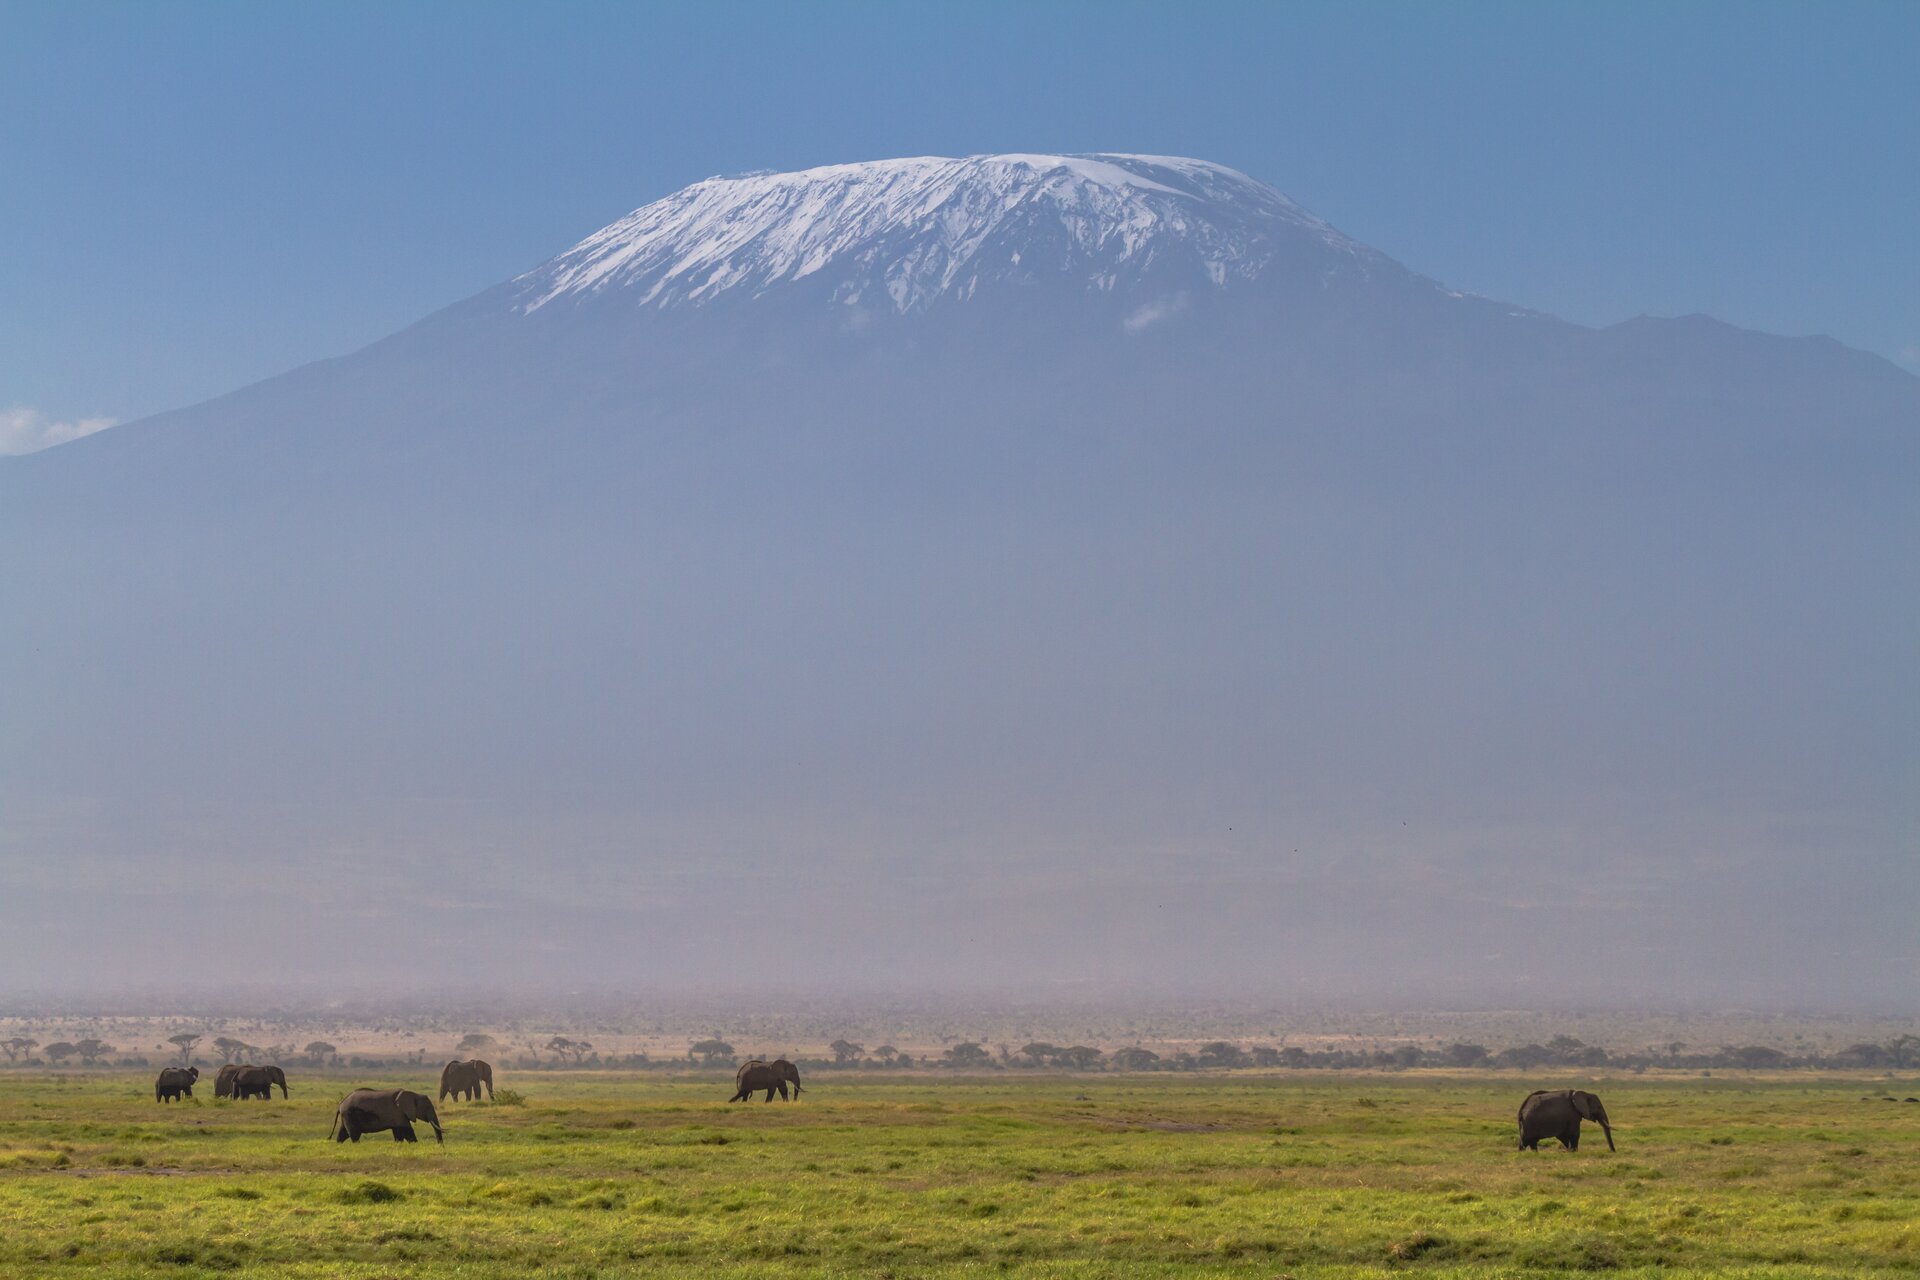 Zdjęcie przedstawia górę Kilimandżaro. Słoneczny dzień. Na pierwszym planie zielone liściaste drzewa i krzewy gęsto porastające teren. Na drugim planie wysoki szczyt góry. Skalisty szczyt pokryty śniegiem. Góra w kształcie trapezu. Szczyt rozciąga się poziomo bez wyraźnego osobnego wierzchołka. Niebo błękitne.